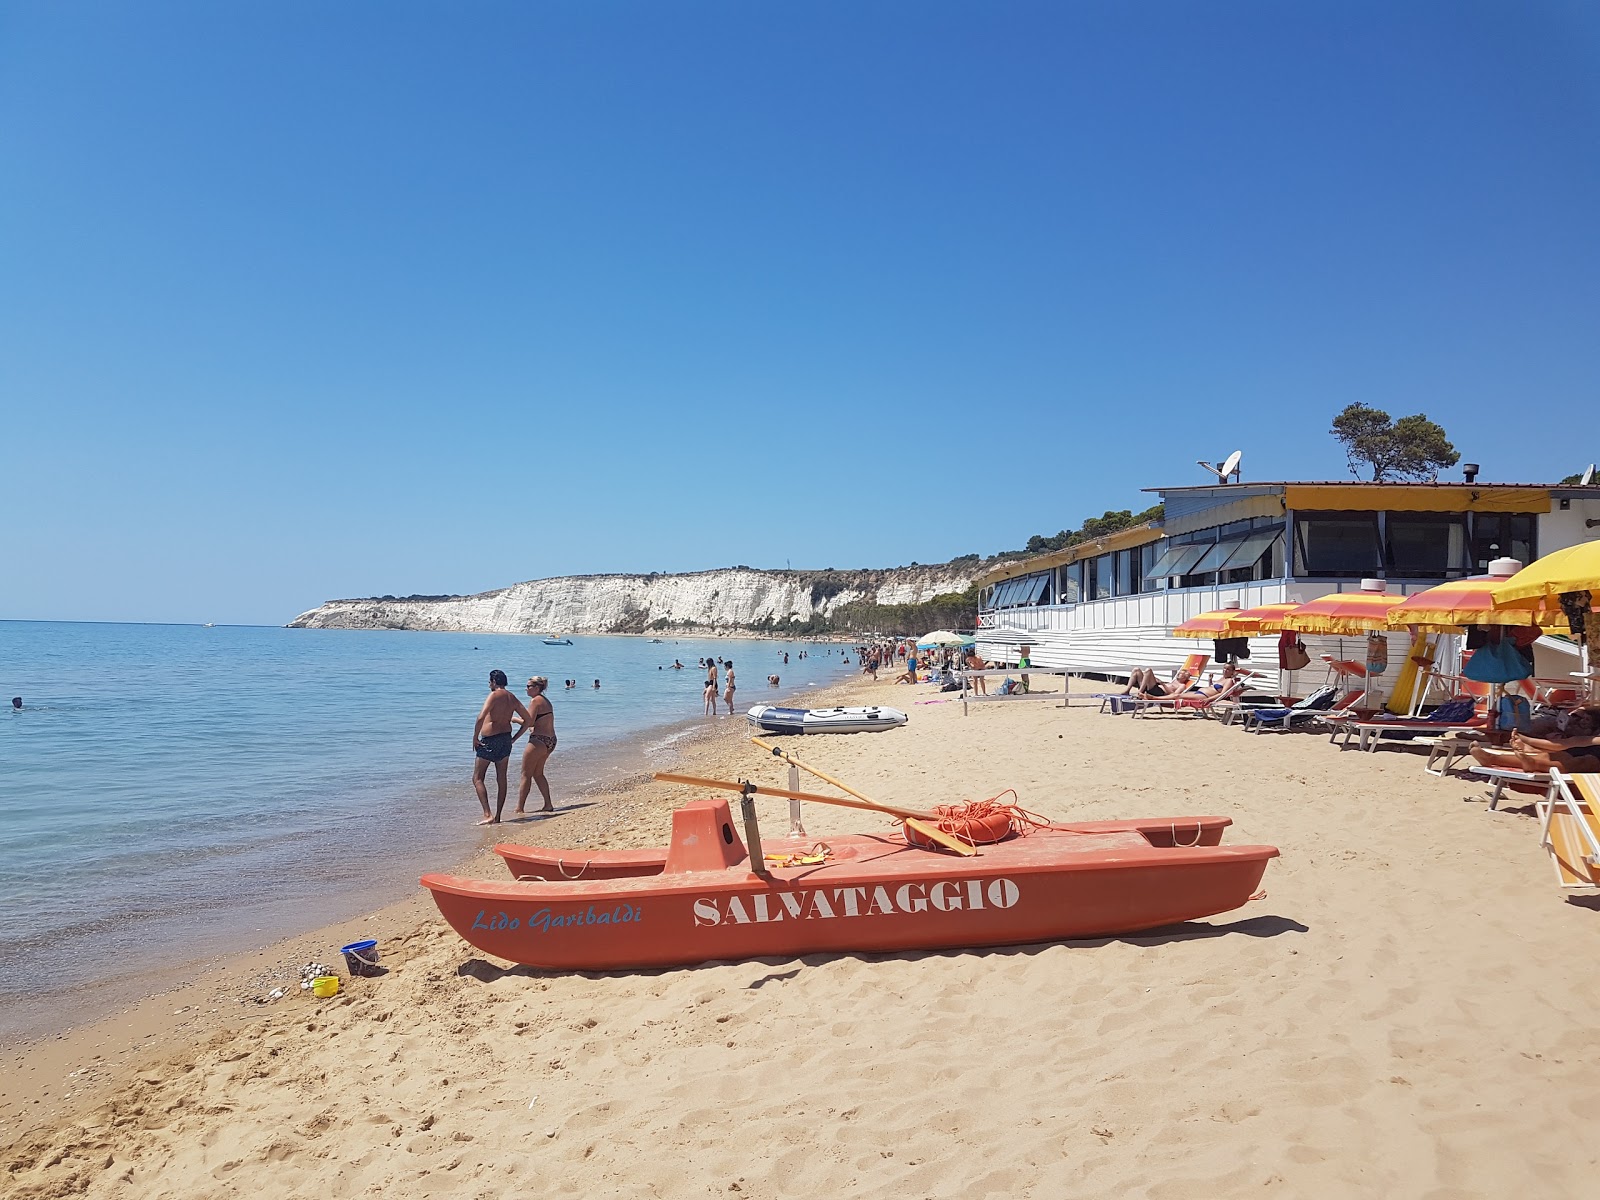 Fotografija Spiaggia Di Eraclea Minoa nahaja se v naravnem okolju